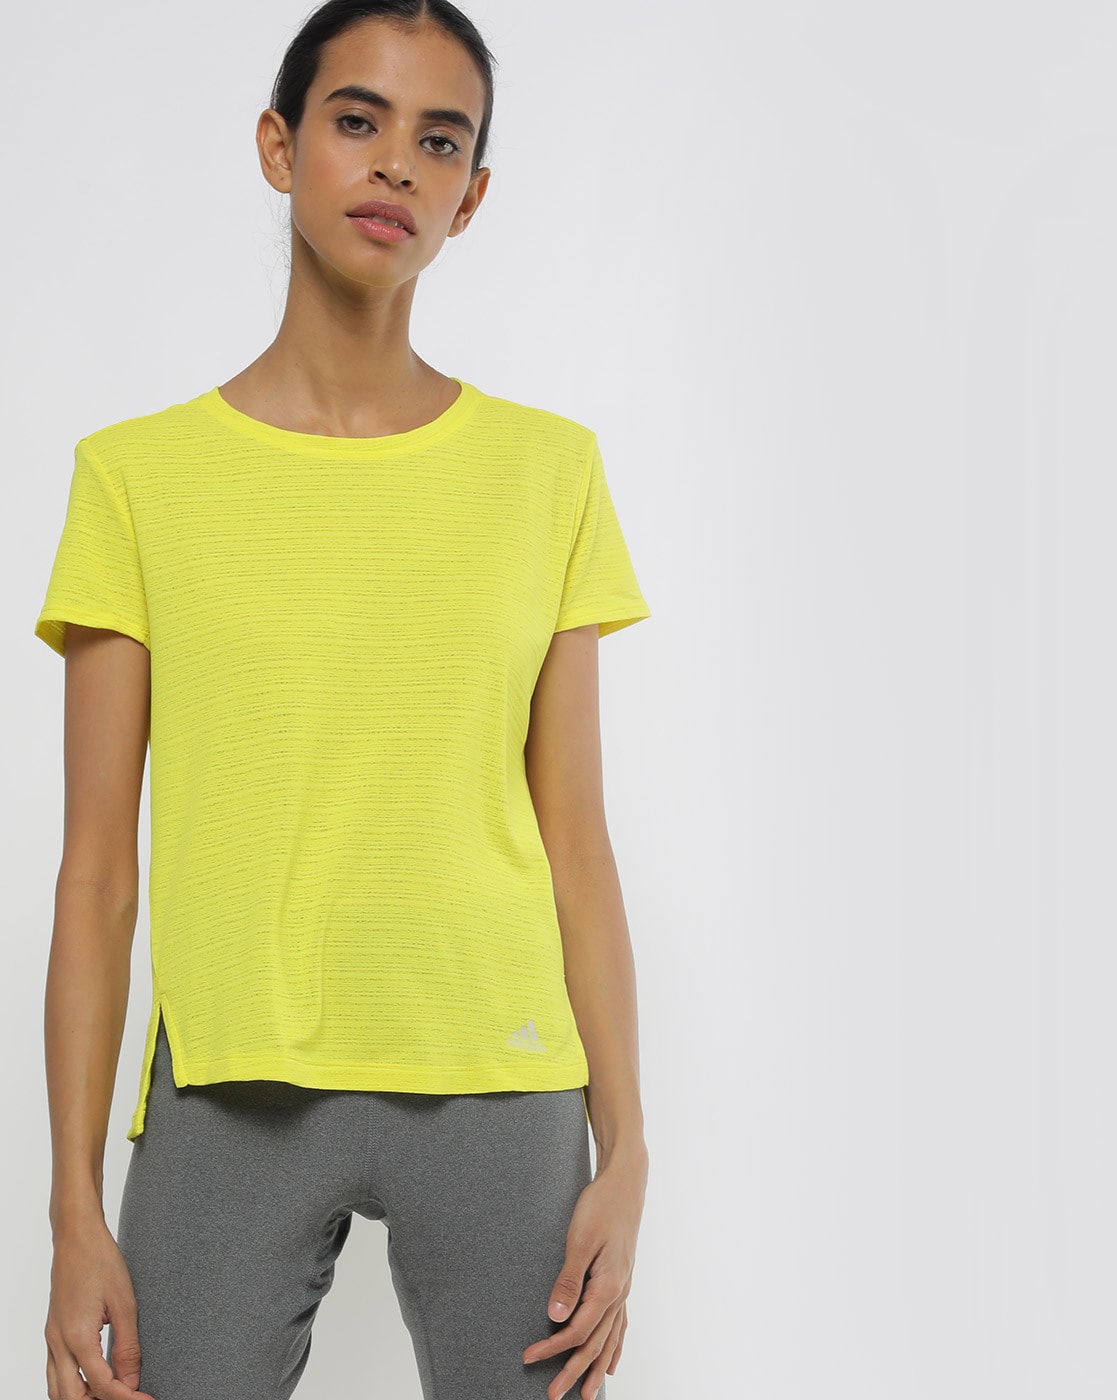 yellow adidas shirt womens